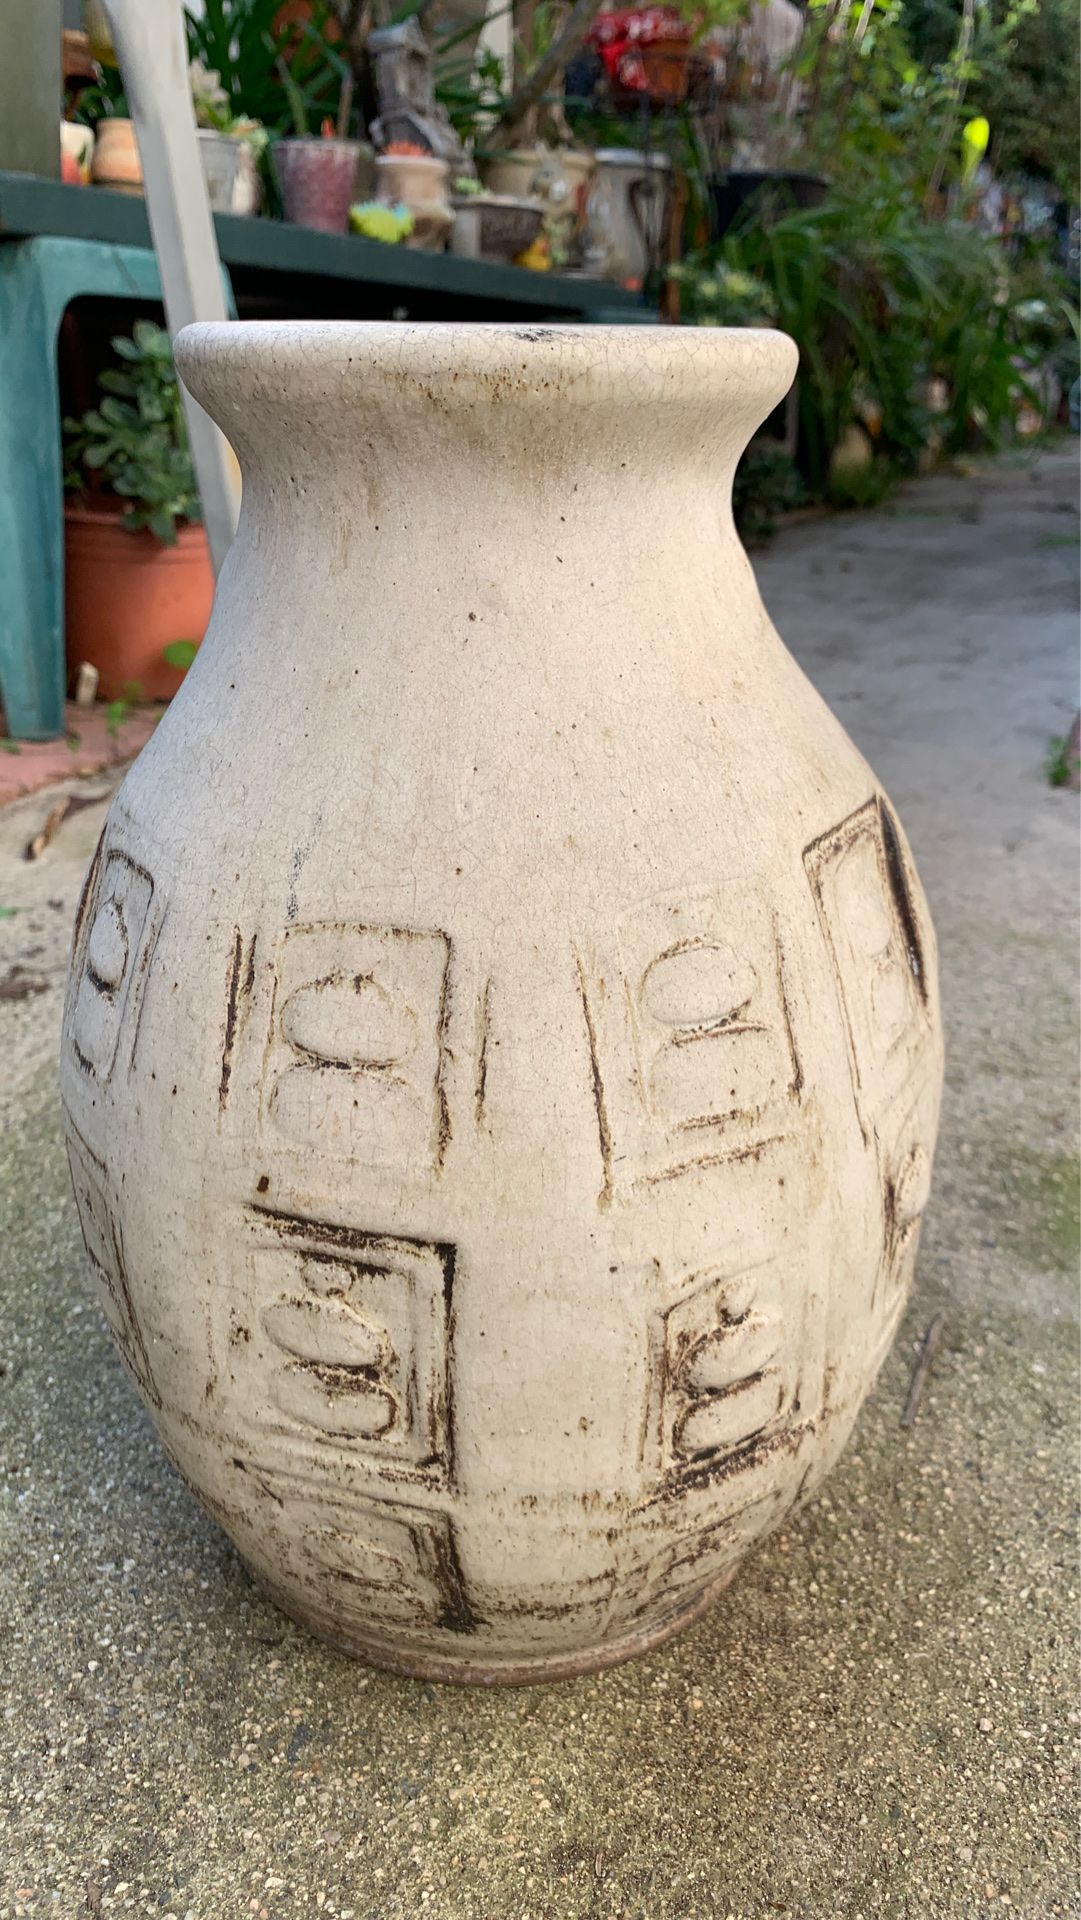 Handmade flower pot or jar for decor